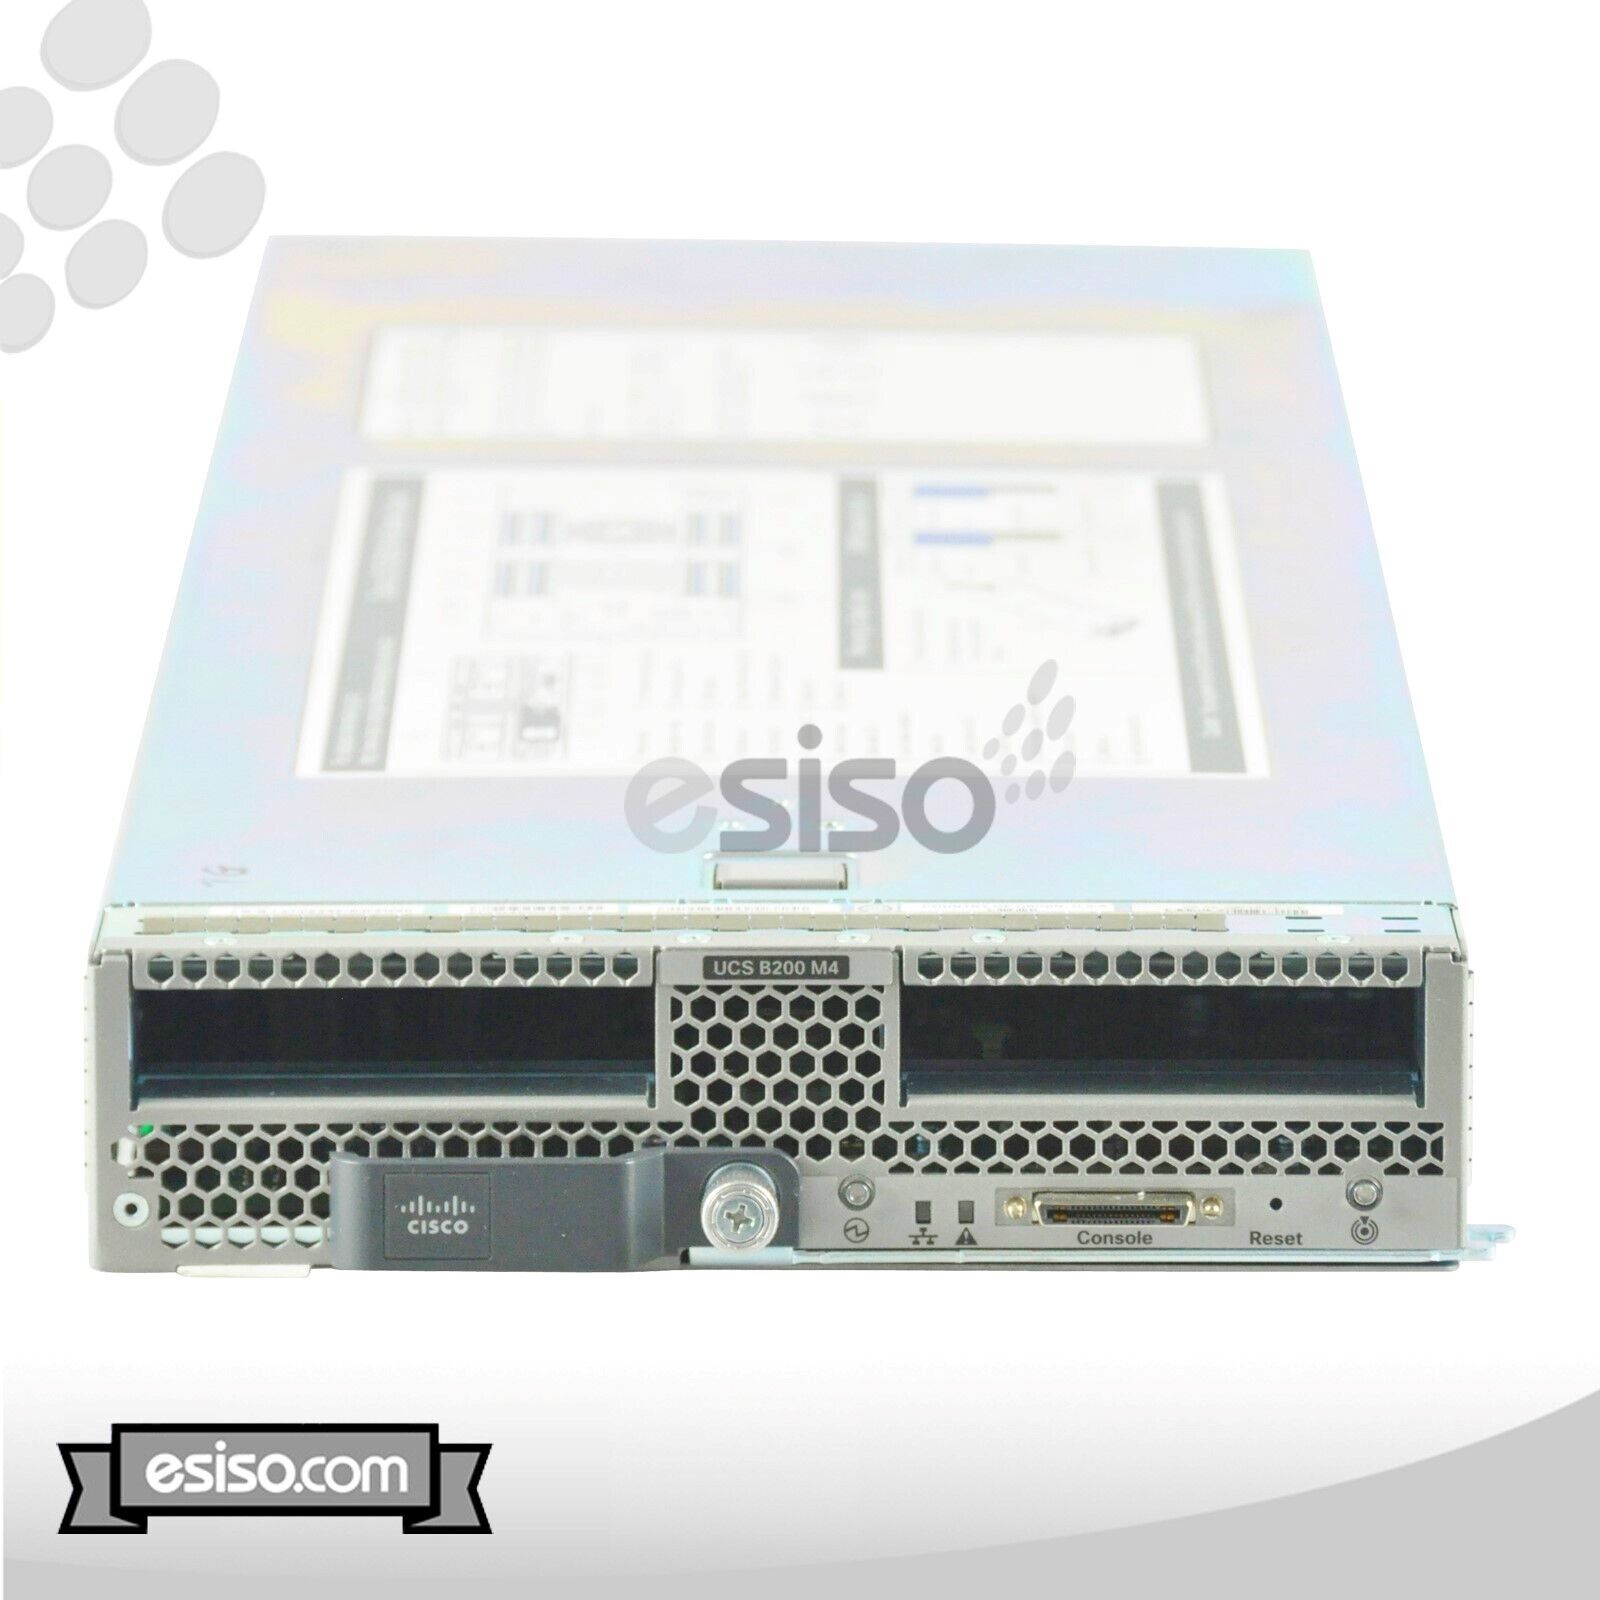 CISCO UCS B200 M4 BLADE 2x 14 CORE E5-2690v4 2.6GHz 512GB RAM NO HDD